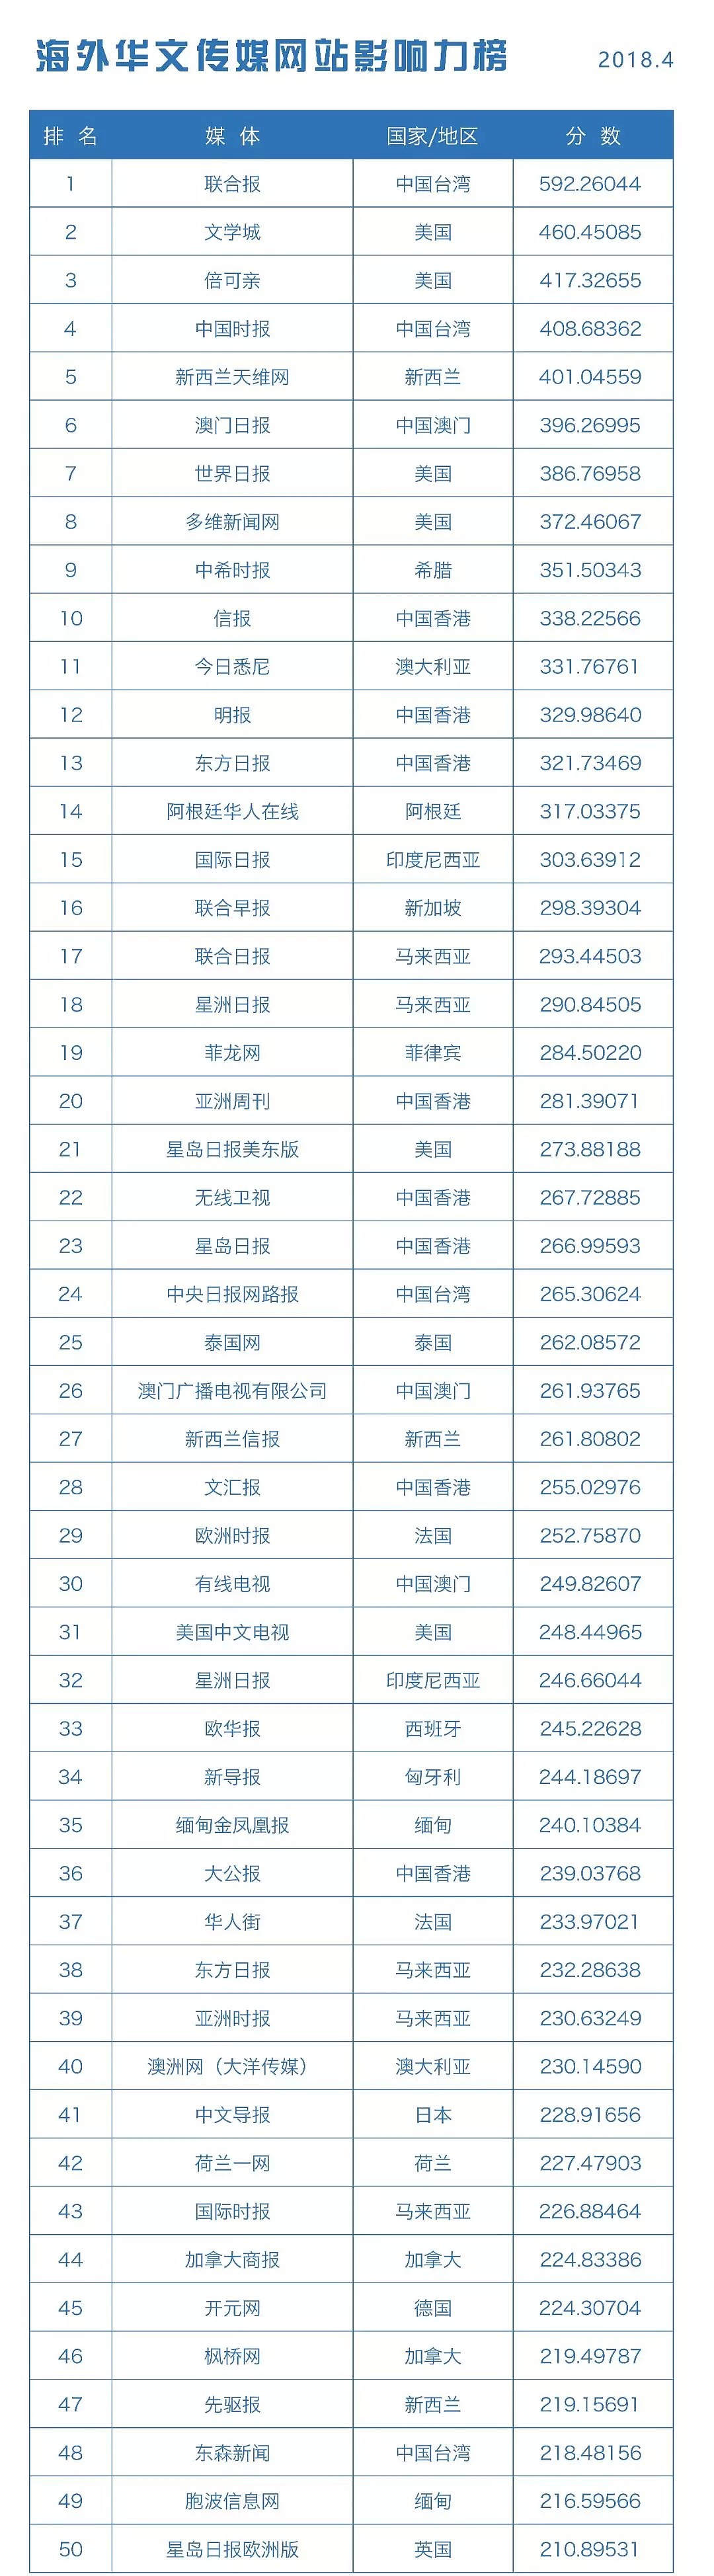 海外华文传媒新媒体影响力榜单发布 - 8